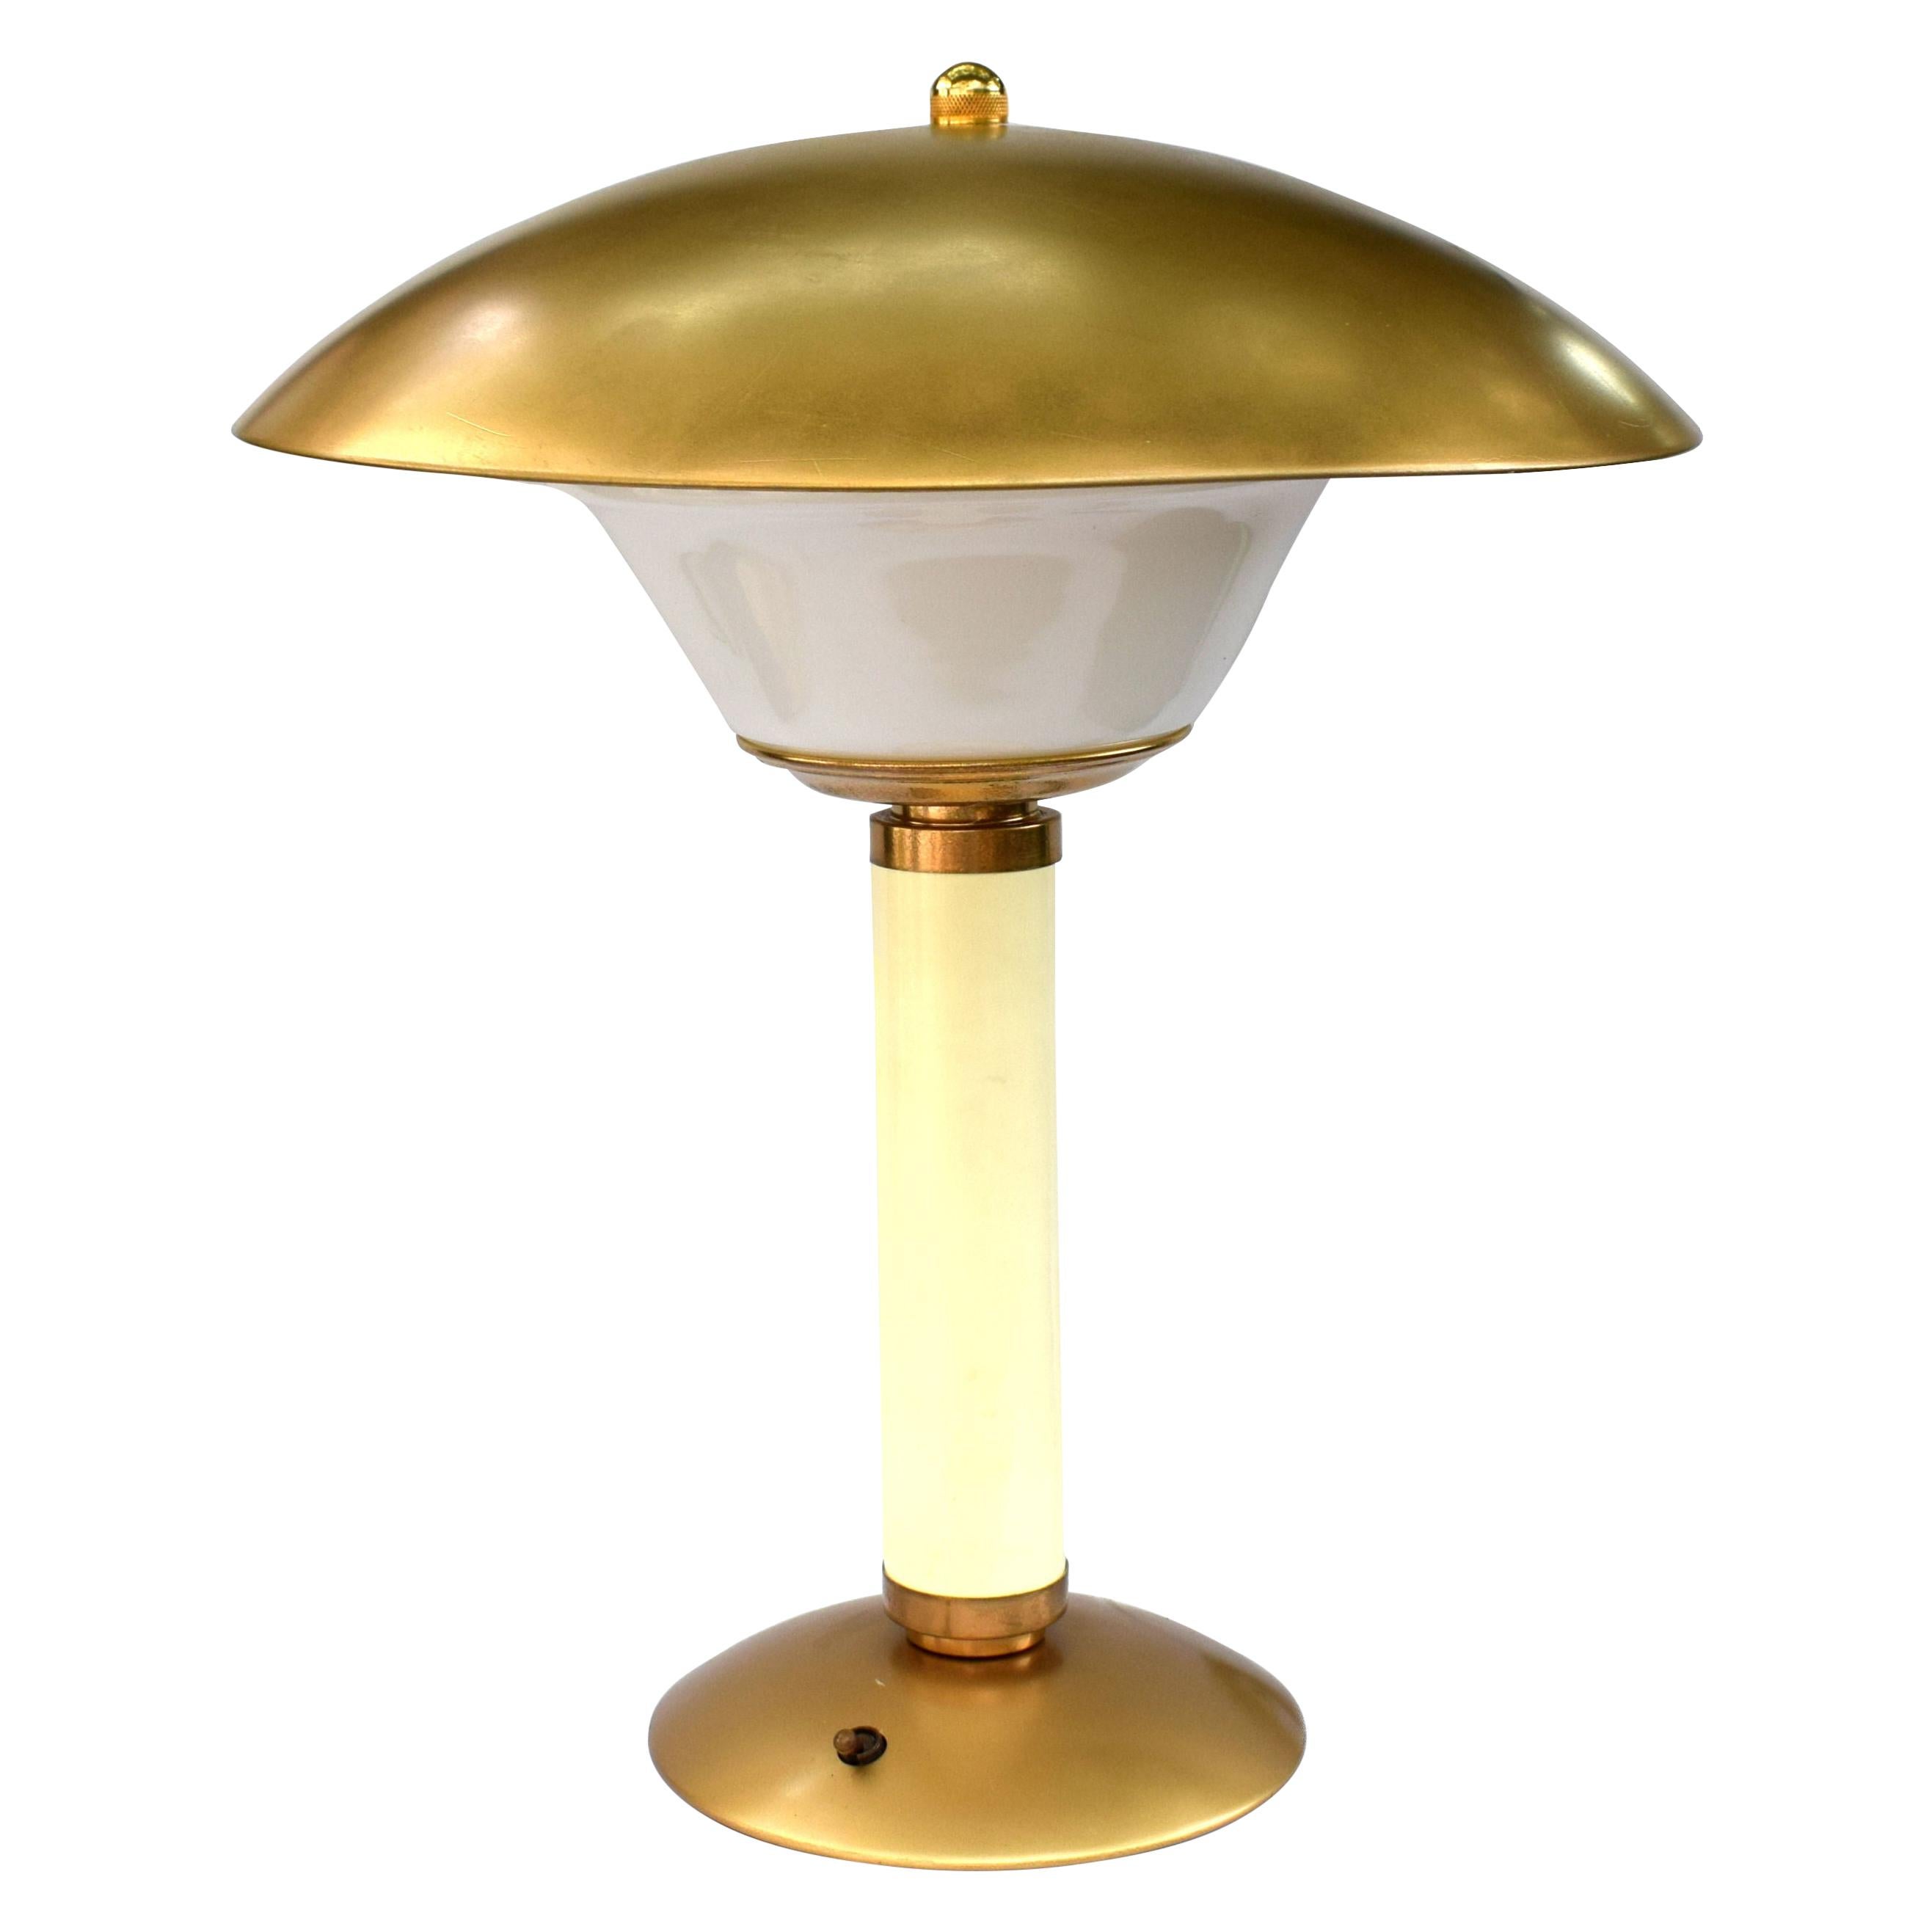 Large Art Deco Bakelite Table Lamp for Jumo, France